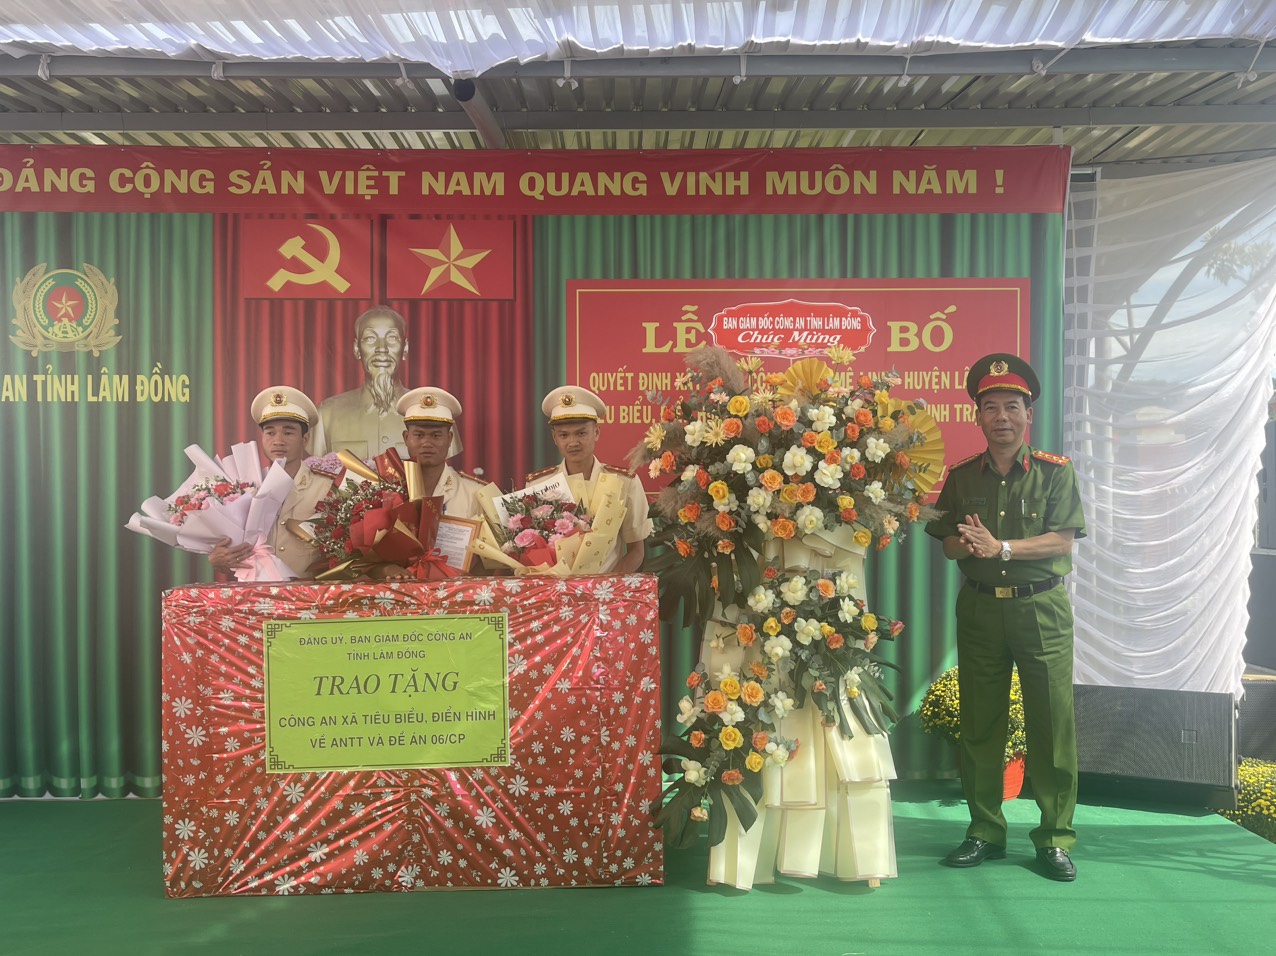 Đại tá Đinh Xuân Huy - Phó Giám đốc Công an tỉnh Lâm Đồng trao quyết định và tặng quà Công an xã Mê Linh